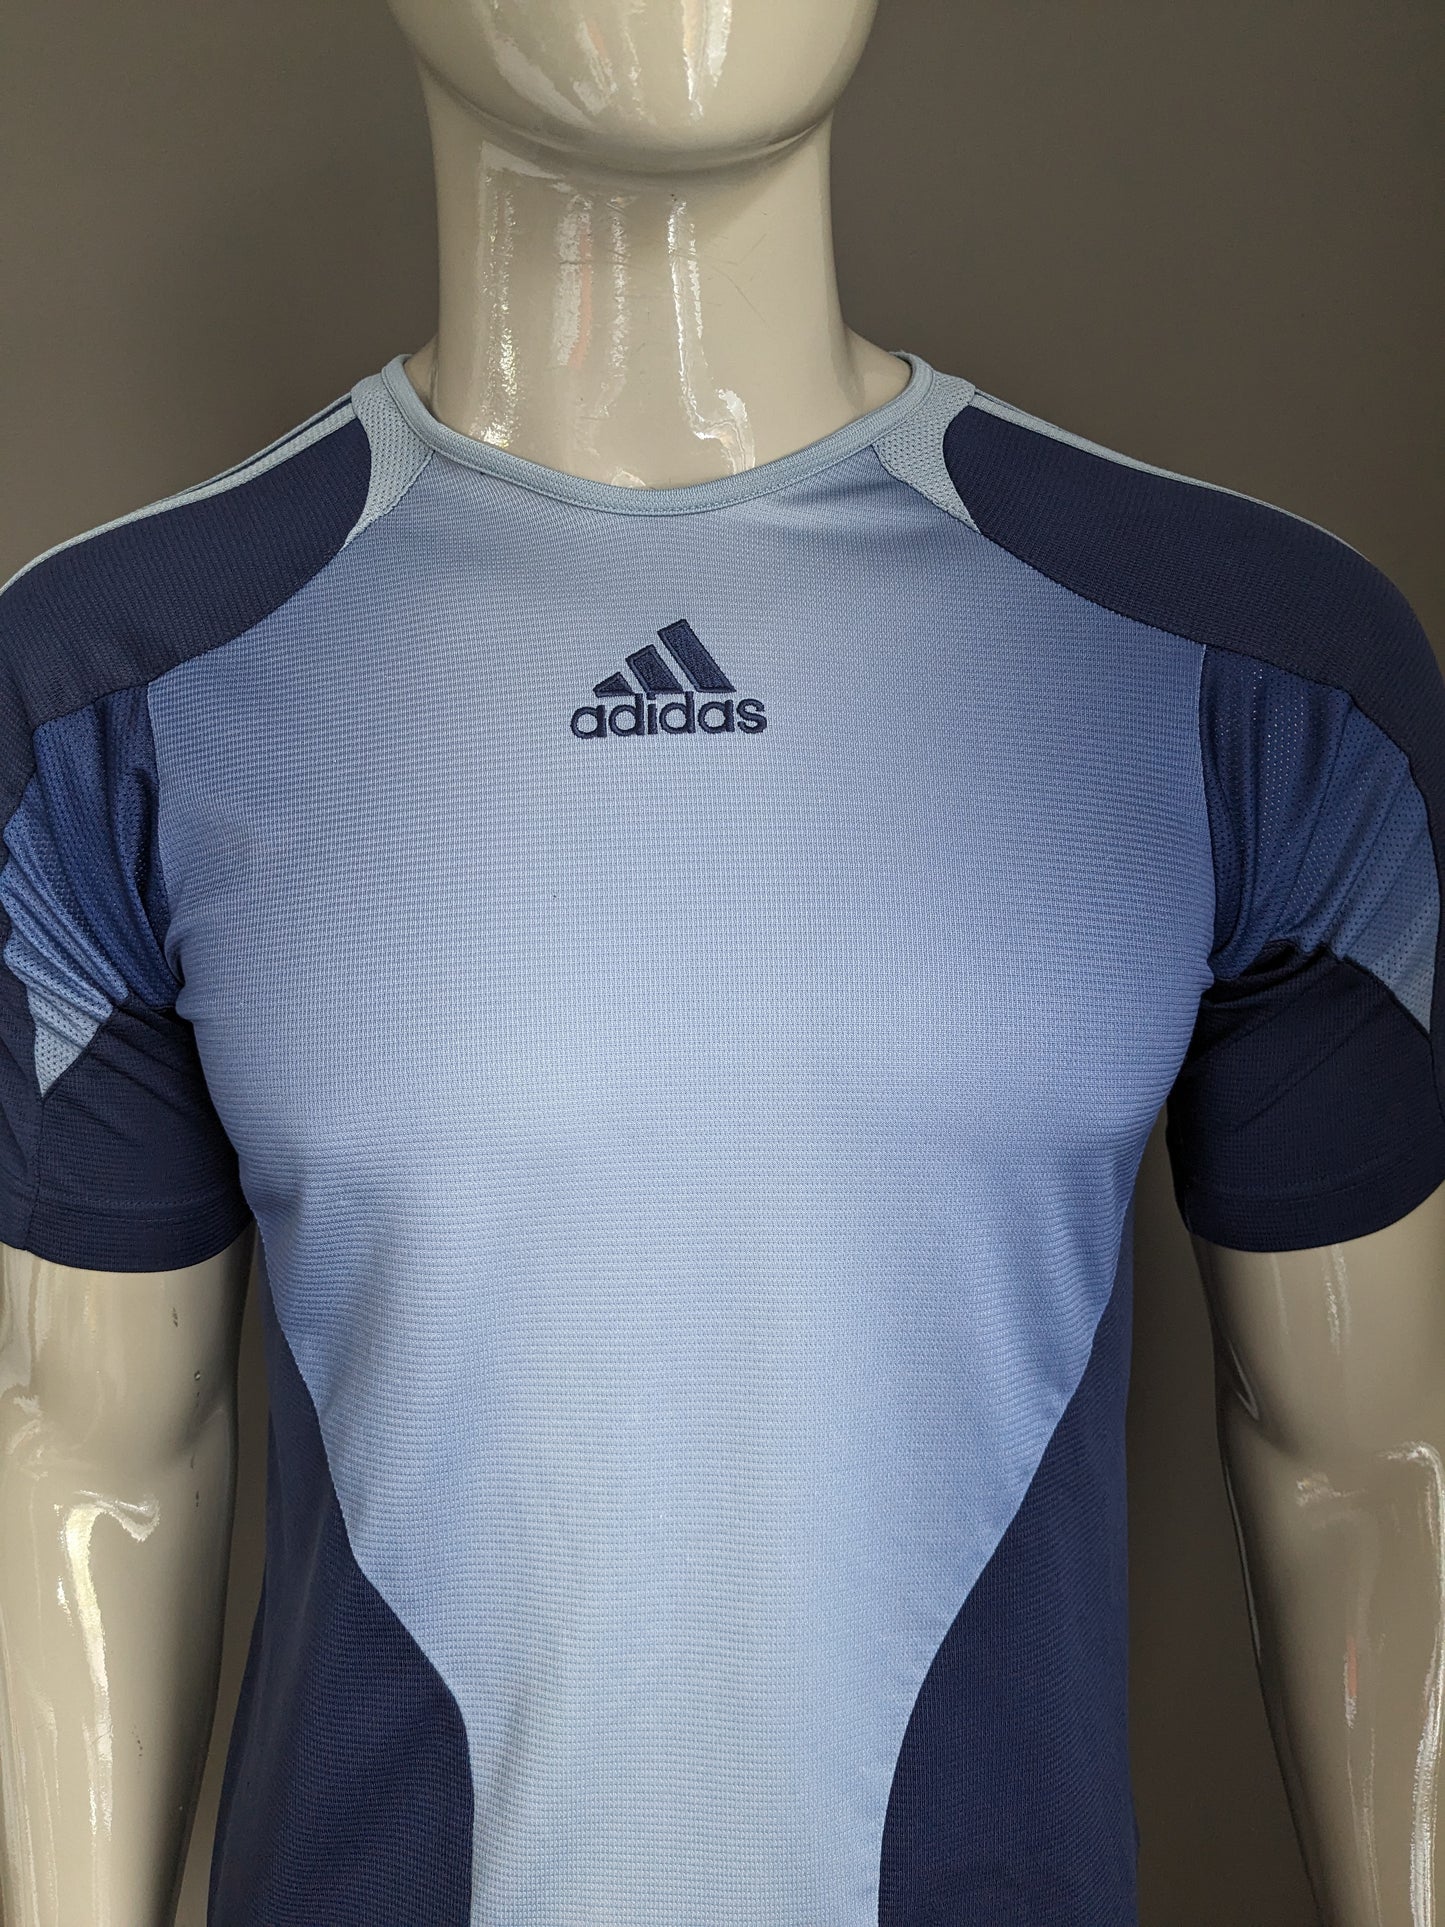 Adidas sport shirt. Blauw gekleurd. Maat S.